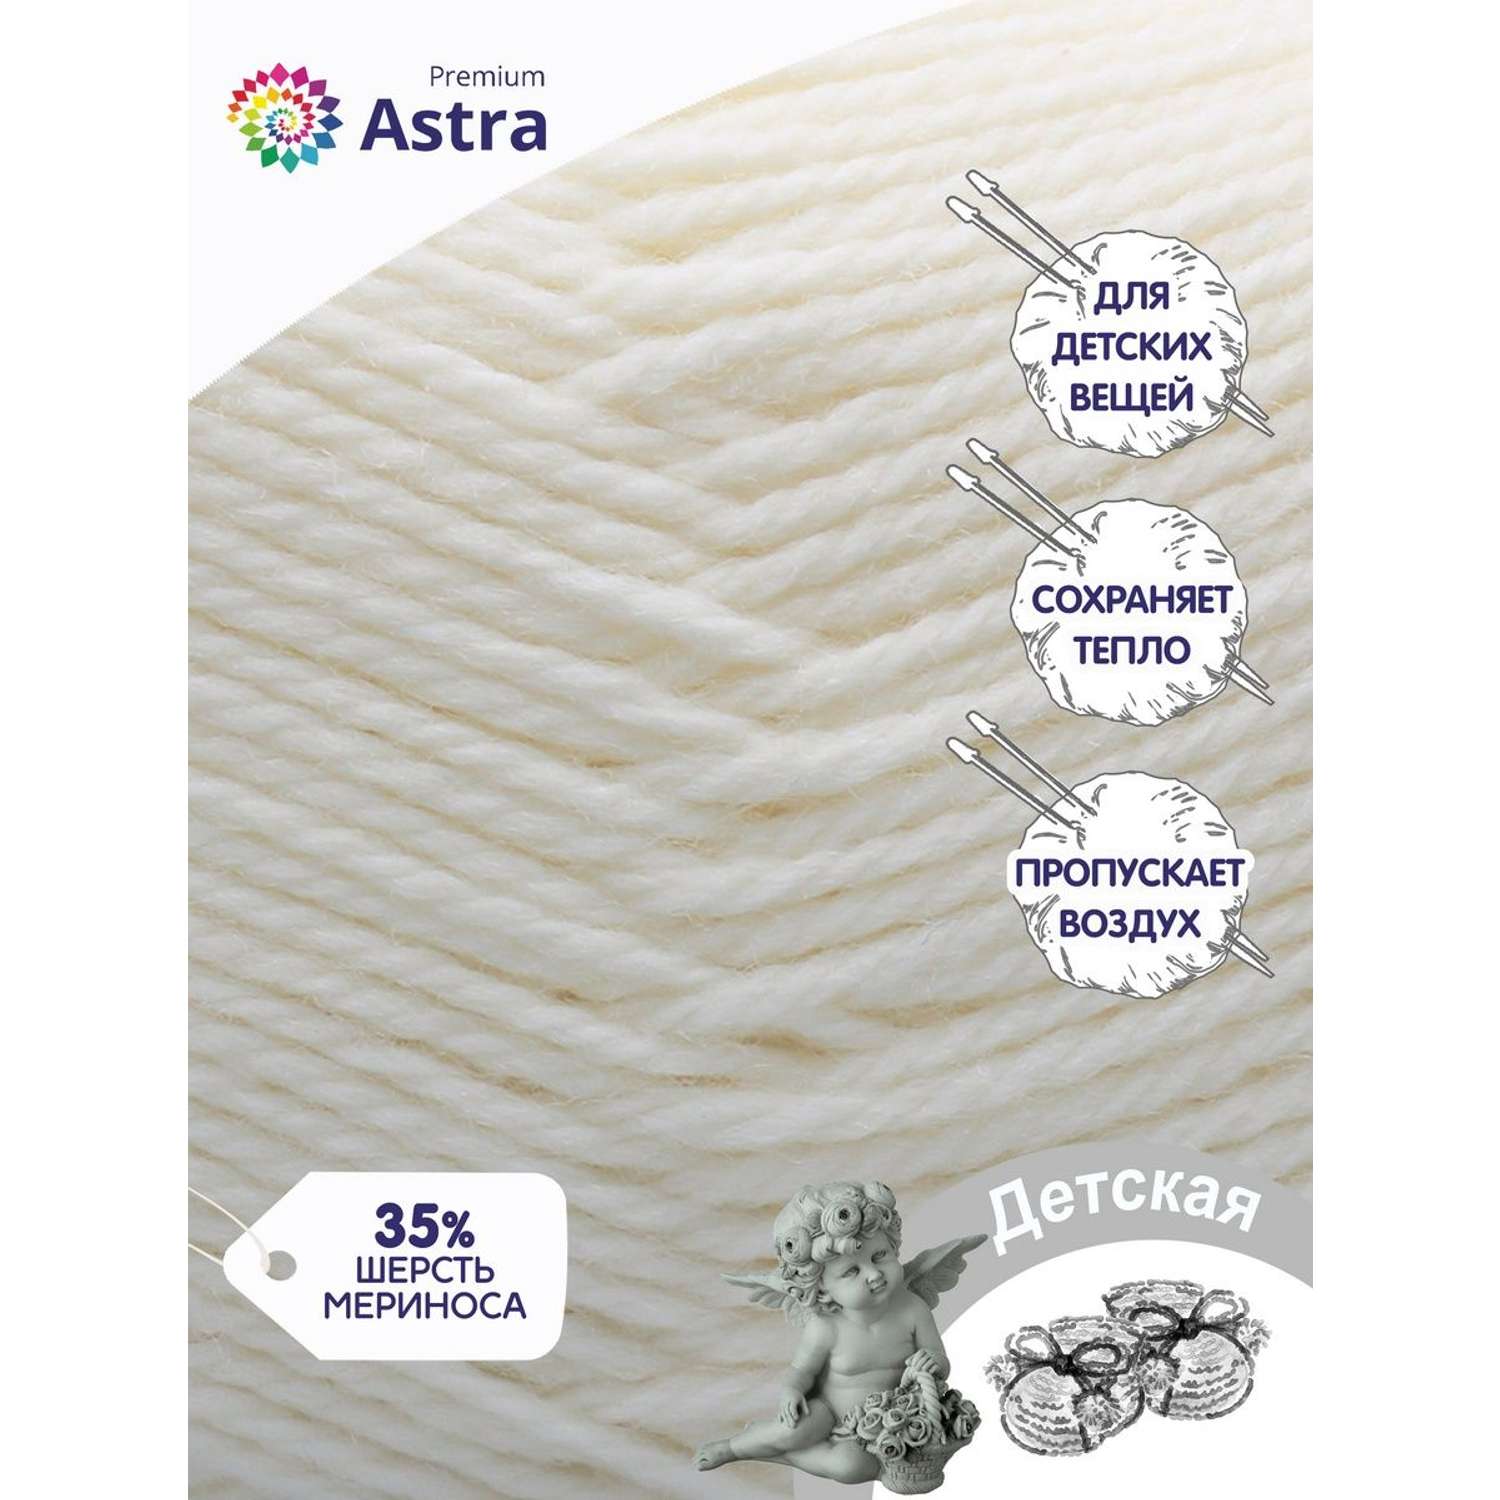 Пряжа для вязания Astra Premium детская из акрила и шерсти для детских вещей 90 гр 270 м 205 белый 3 мотка - фото 2